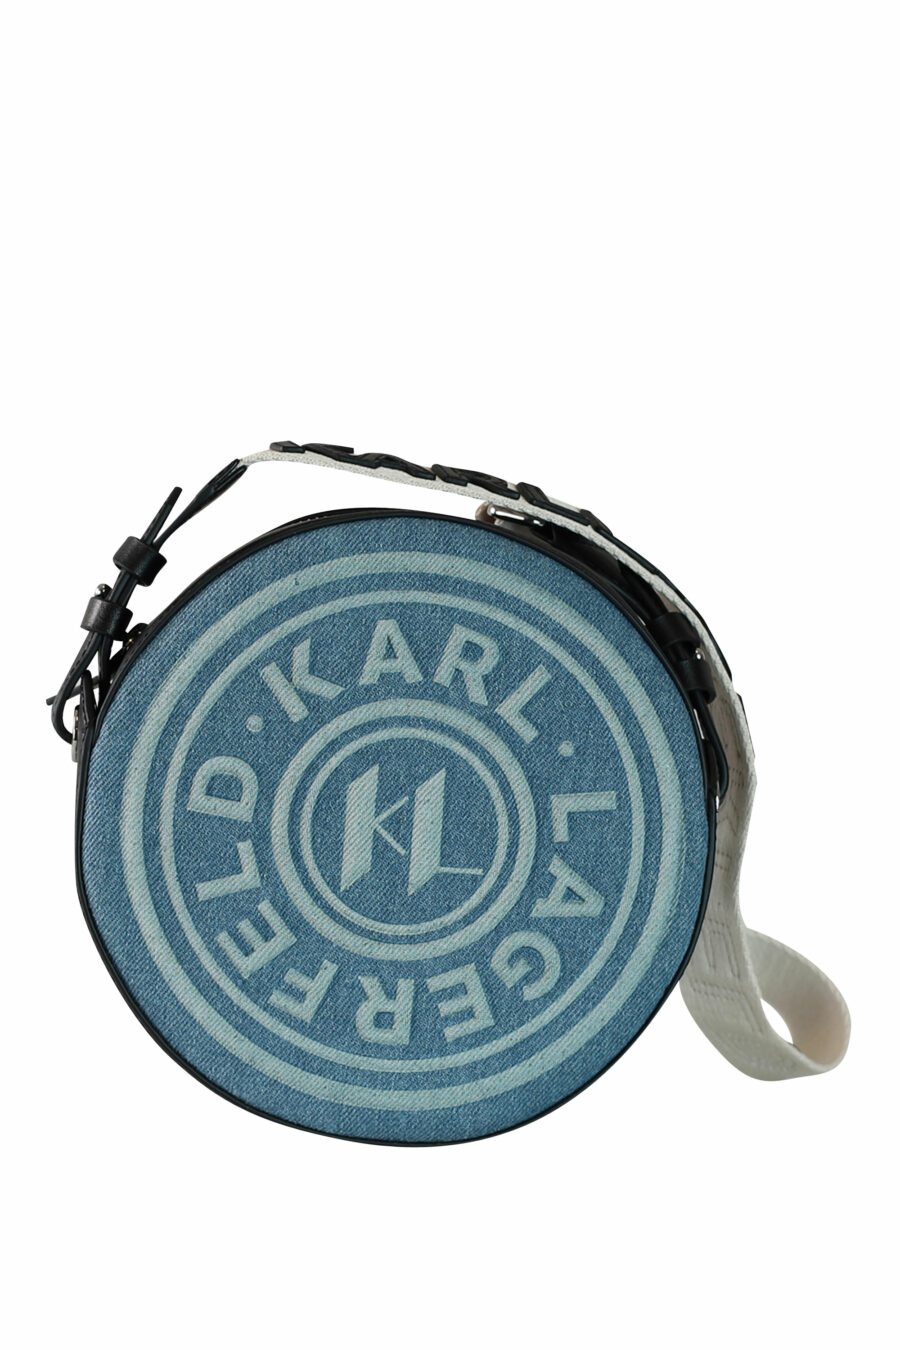 Bolso bandolera azul circular con logo monocromático - 8720744234760